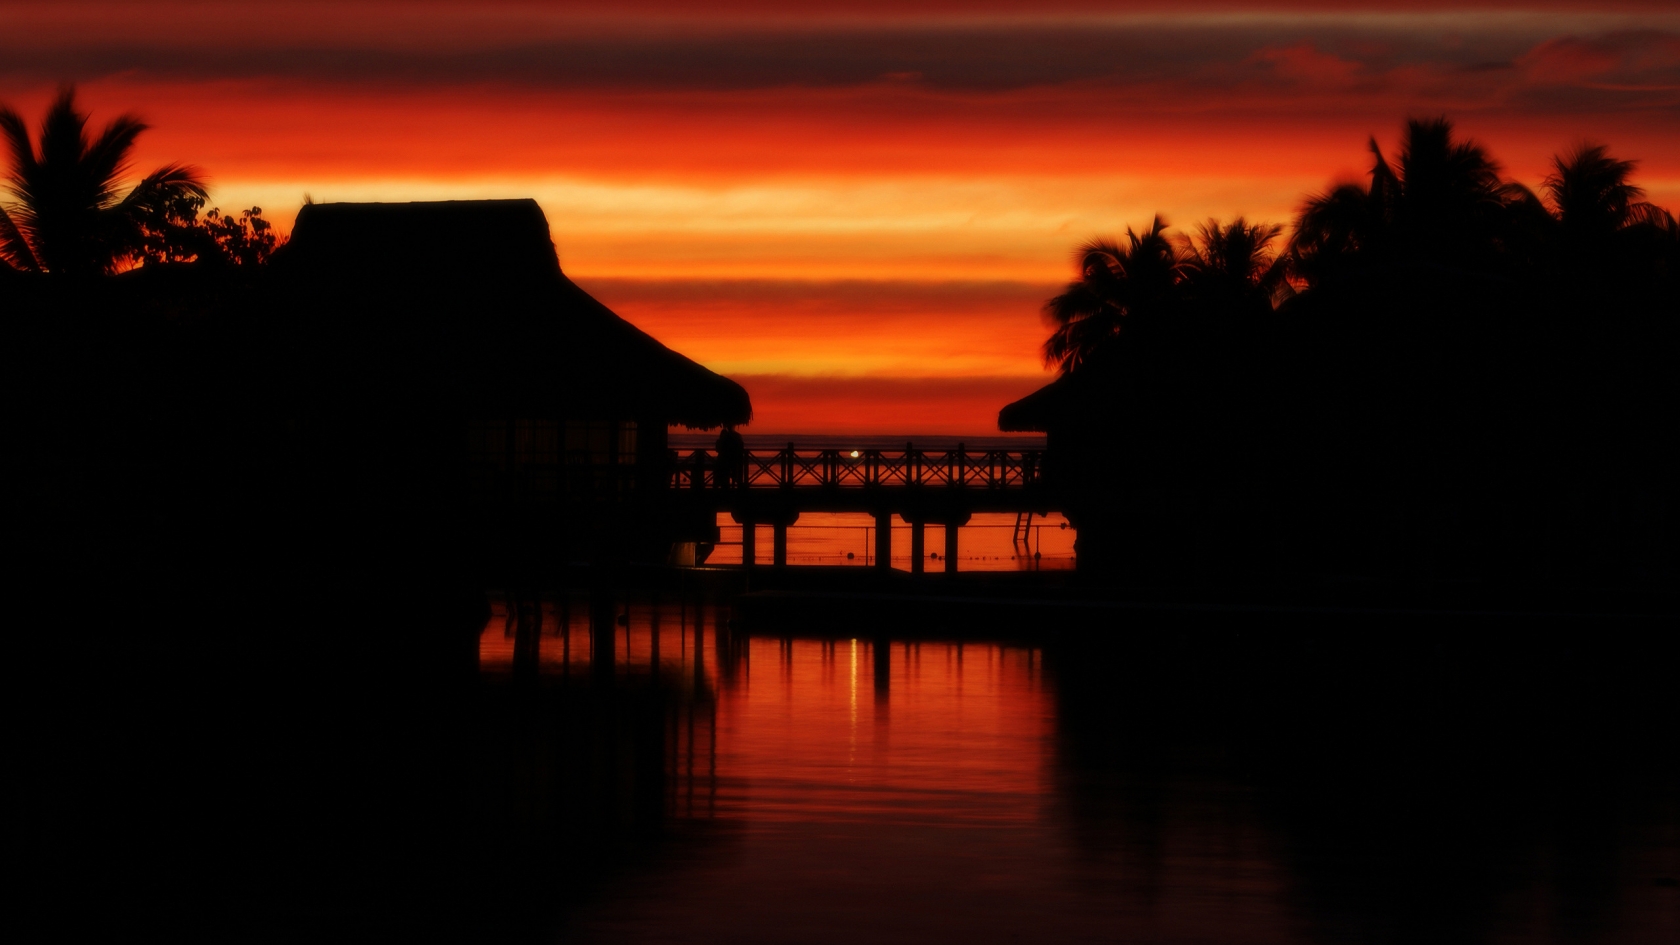 Moorea Sunset for 1680 x 945 HDTV resolution